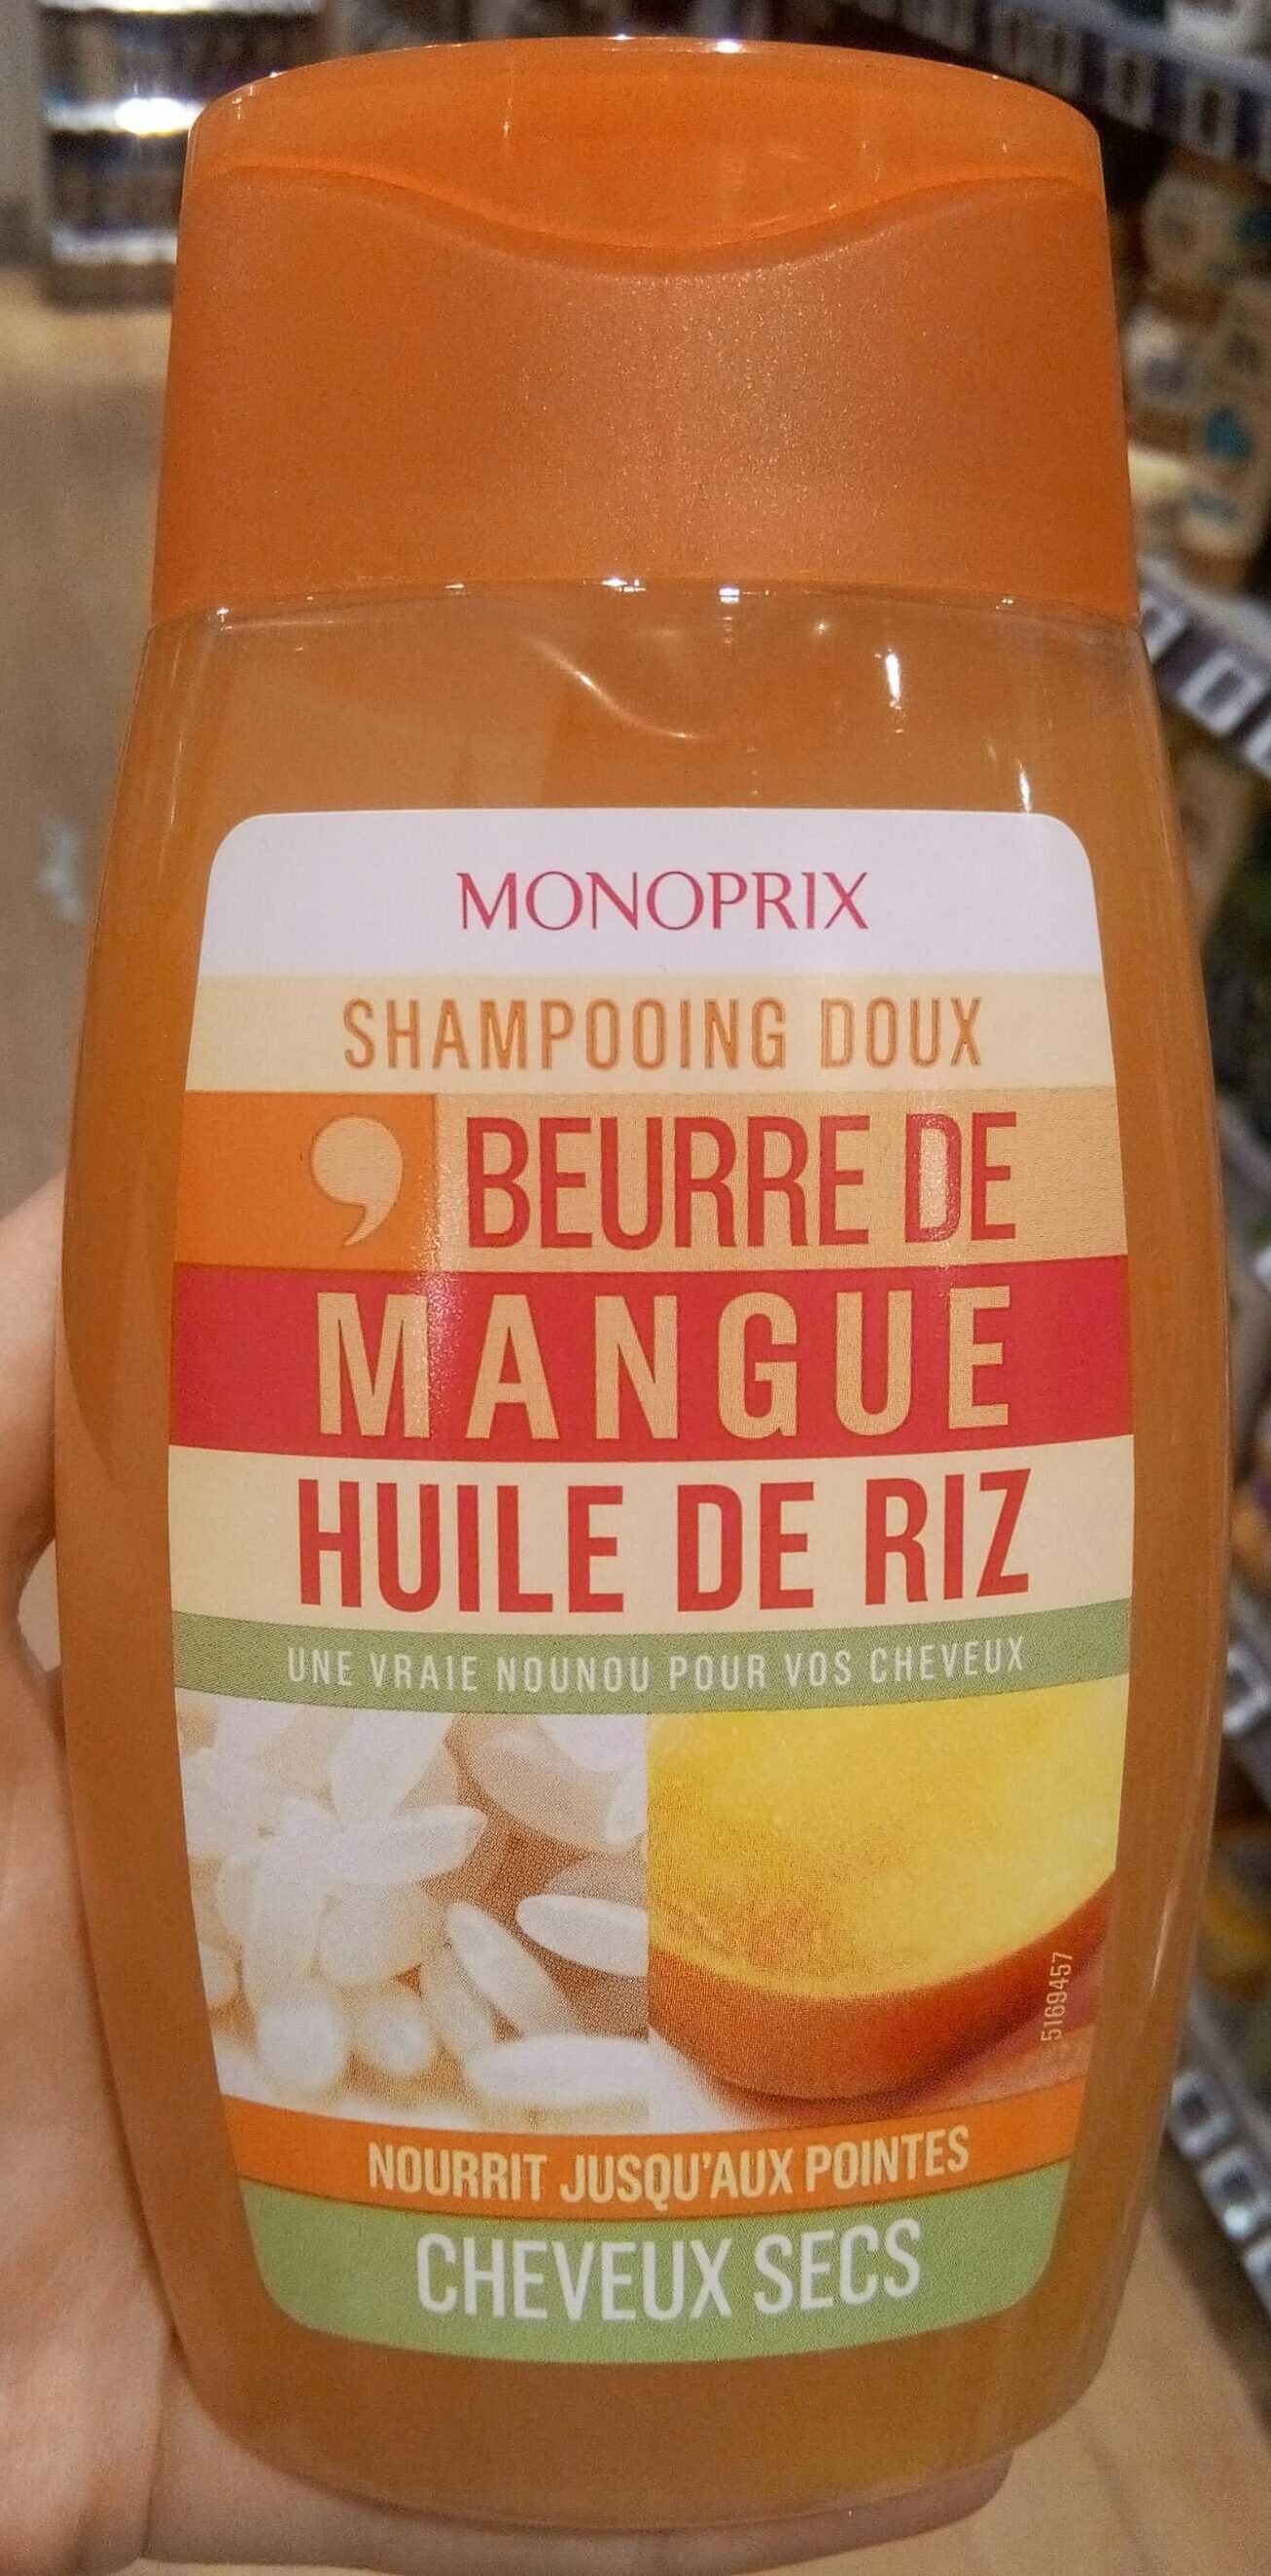 Shampooing doux beurre de mangue huile de riz - Produit - fr